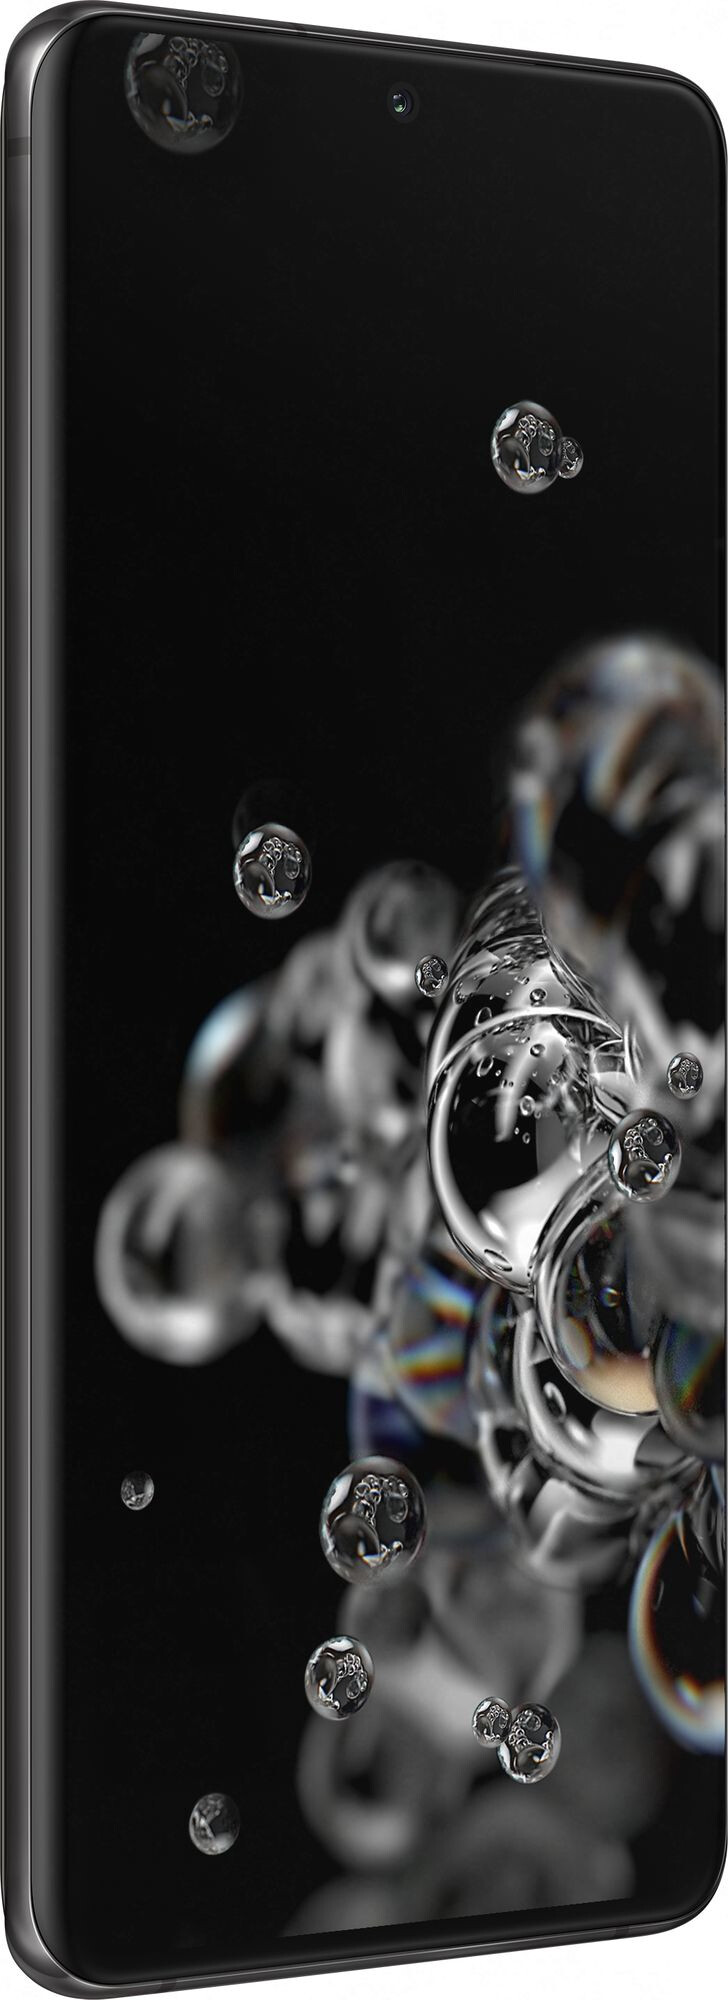 Смартфон Samsung Galaxy S20 Ultra 5G 12/128GB Cosmic Black (Черный)